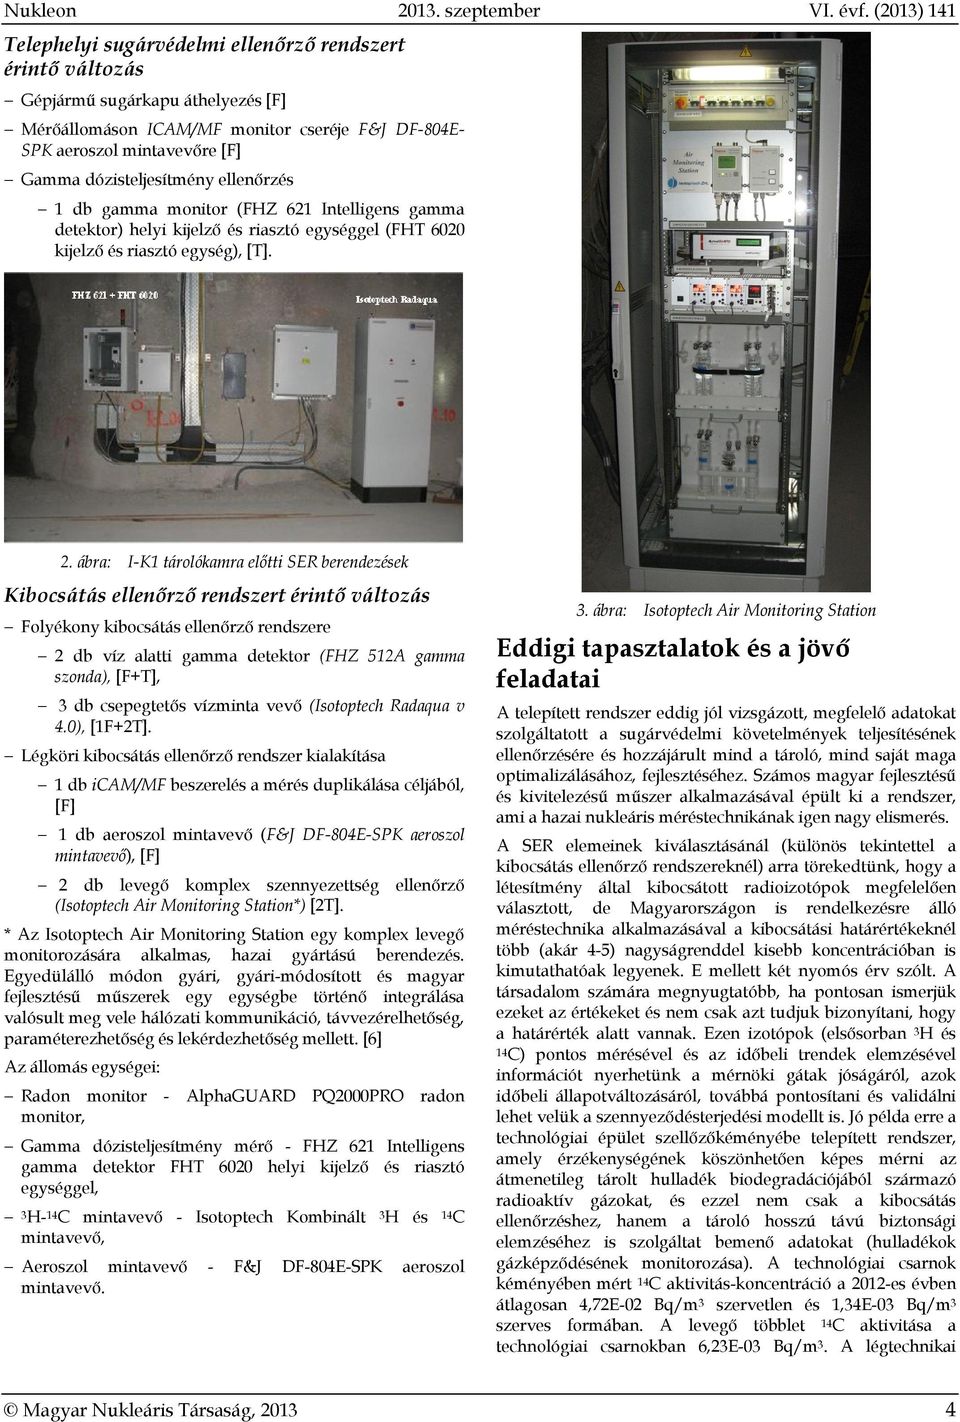 dózisteljesítmény ellenőrzés 1 db gamma monitor (FHZ 621 Intelligens gamma detektor) helyi kijelző és riasztó egységgel (FHT 6020 kijelző és riasztó egység), [T]. 2.